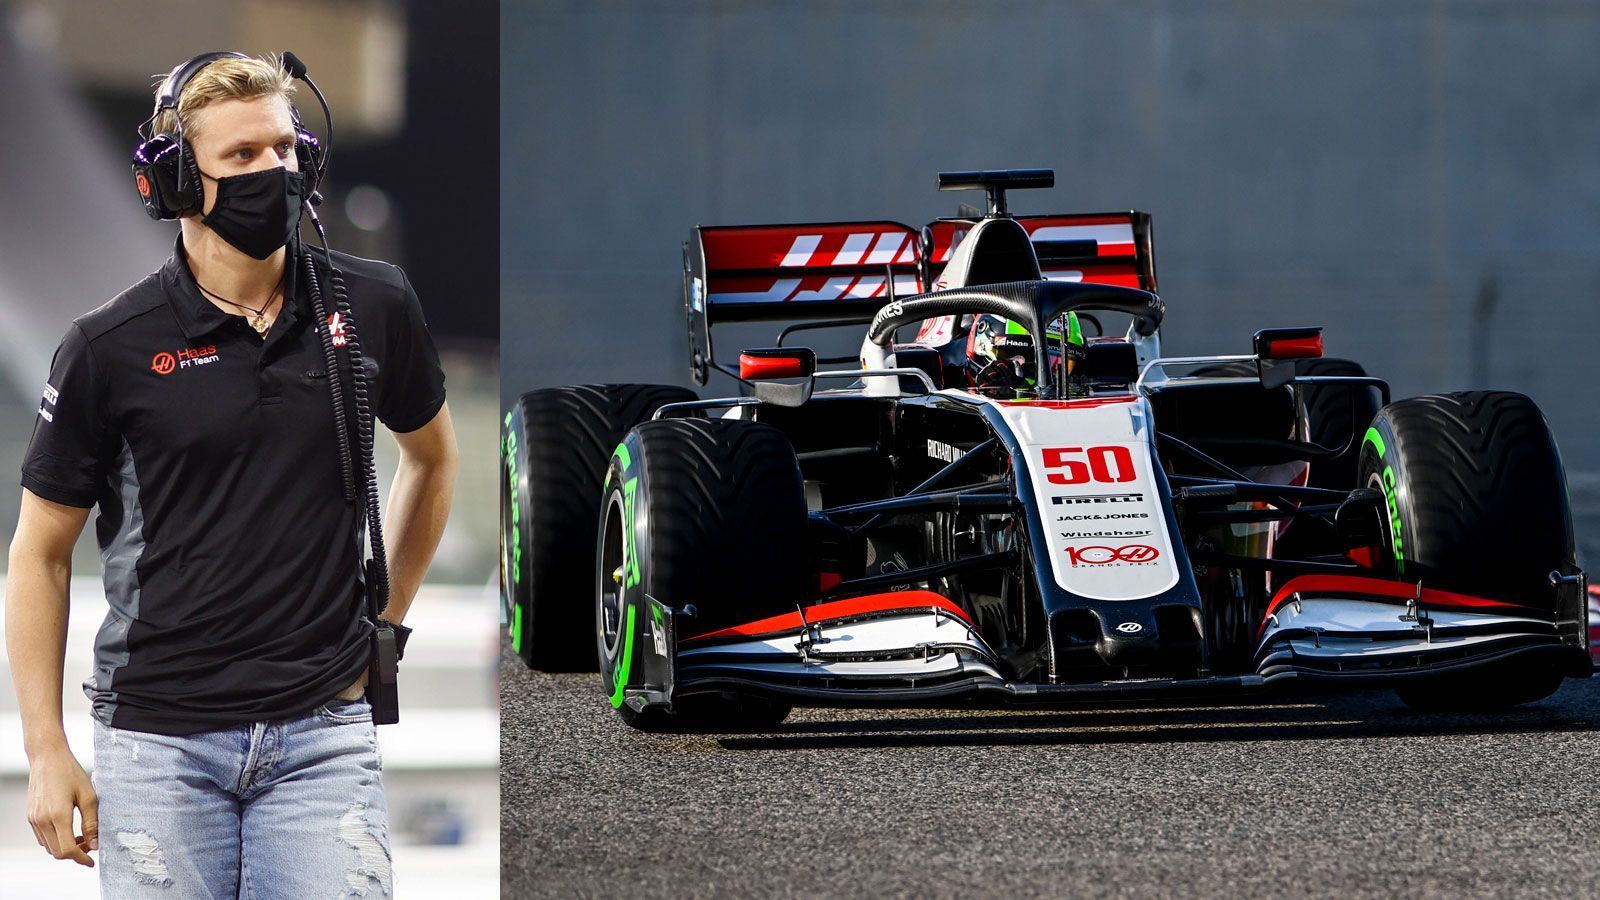 
                <strong>Saisonstart am 28. März in Bahrain</strong><br>
                Generell läuft seine Saisonvorbereitung auf Hochtouren. Den Trainingsschwerpunkt legte er vor allem auf die Nackenmuskulatur und seine Ausdauer. In seinem Haas-Boliden wird der 21-Jährige wohl erst bei den offiziellen Wintertests vom 12. bis 14. März in Bahrain fahren dürfen. Zwei Wochen später, am 28. März, beginnt Schumachers Formel-1-Karriere beim Großen Preis von Bahrain dann endlich auch ganz offiziell mit dem ersten Rennen. Dann wird er mit seinem Teamkollegen Nikita Mazepin um Punkte fahren und seinen Formel-1-Traum leben: "Ich fühle mich bereit", sagte er selbstbewusst.
              